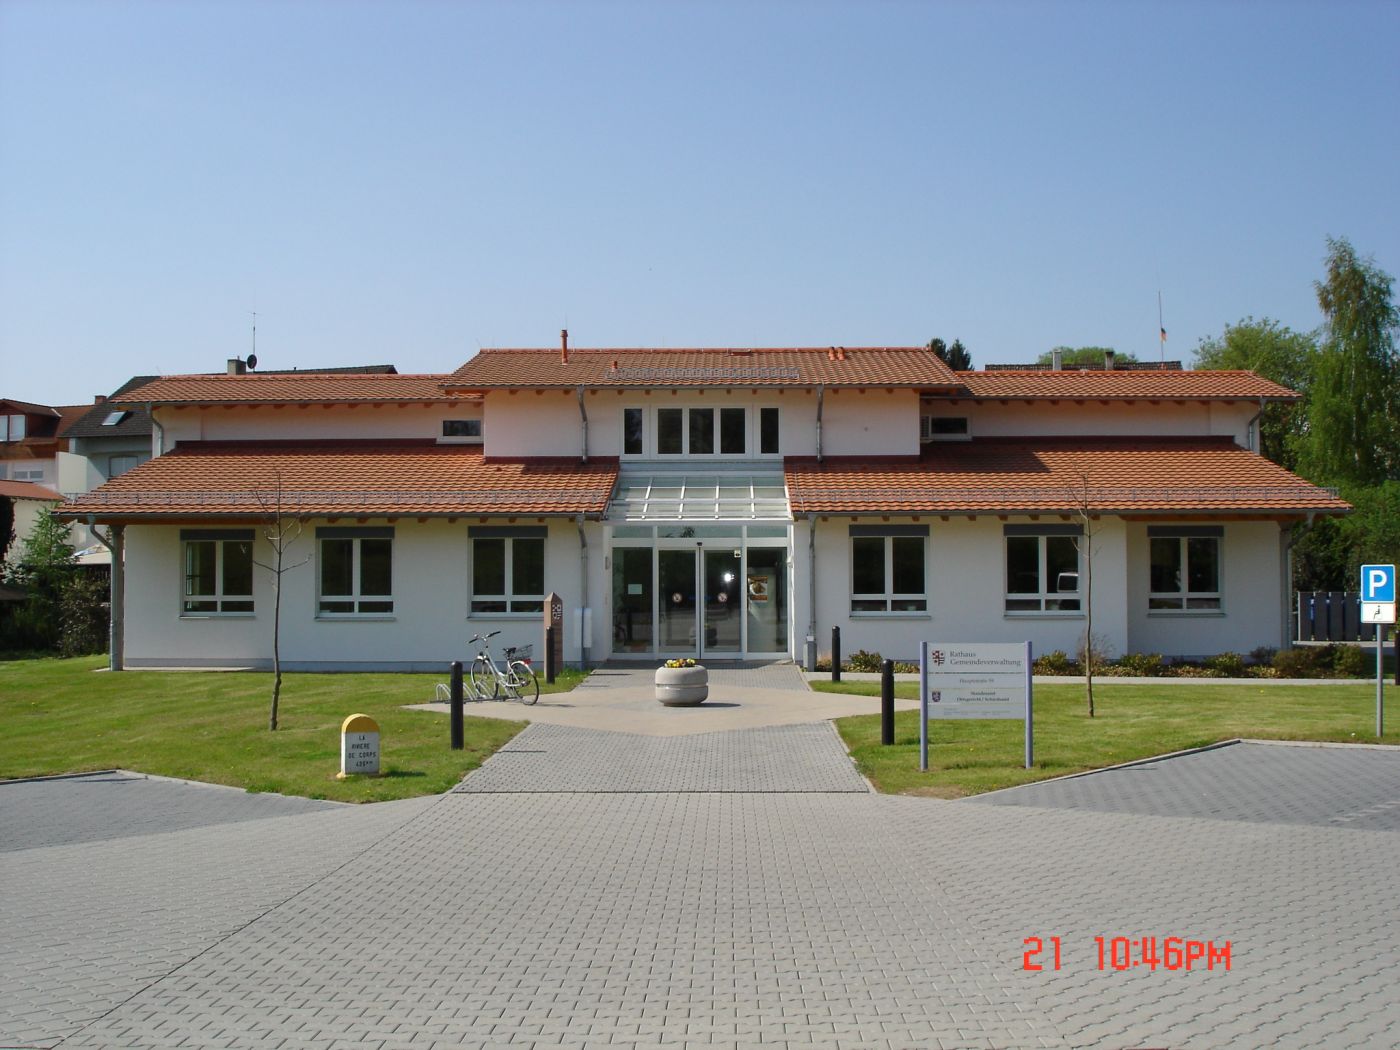 Rathaus der Gemeinde Brombachtal